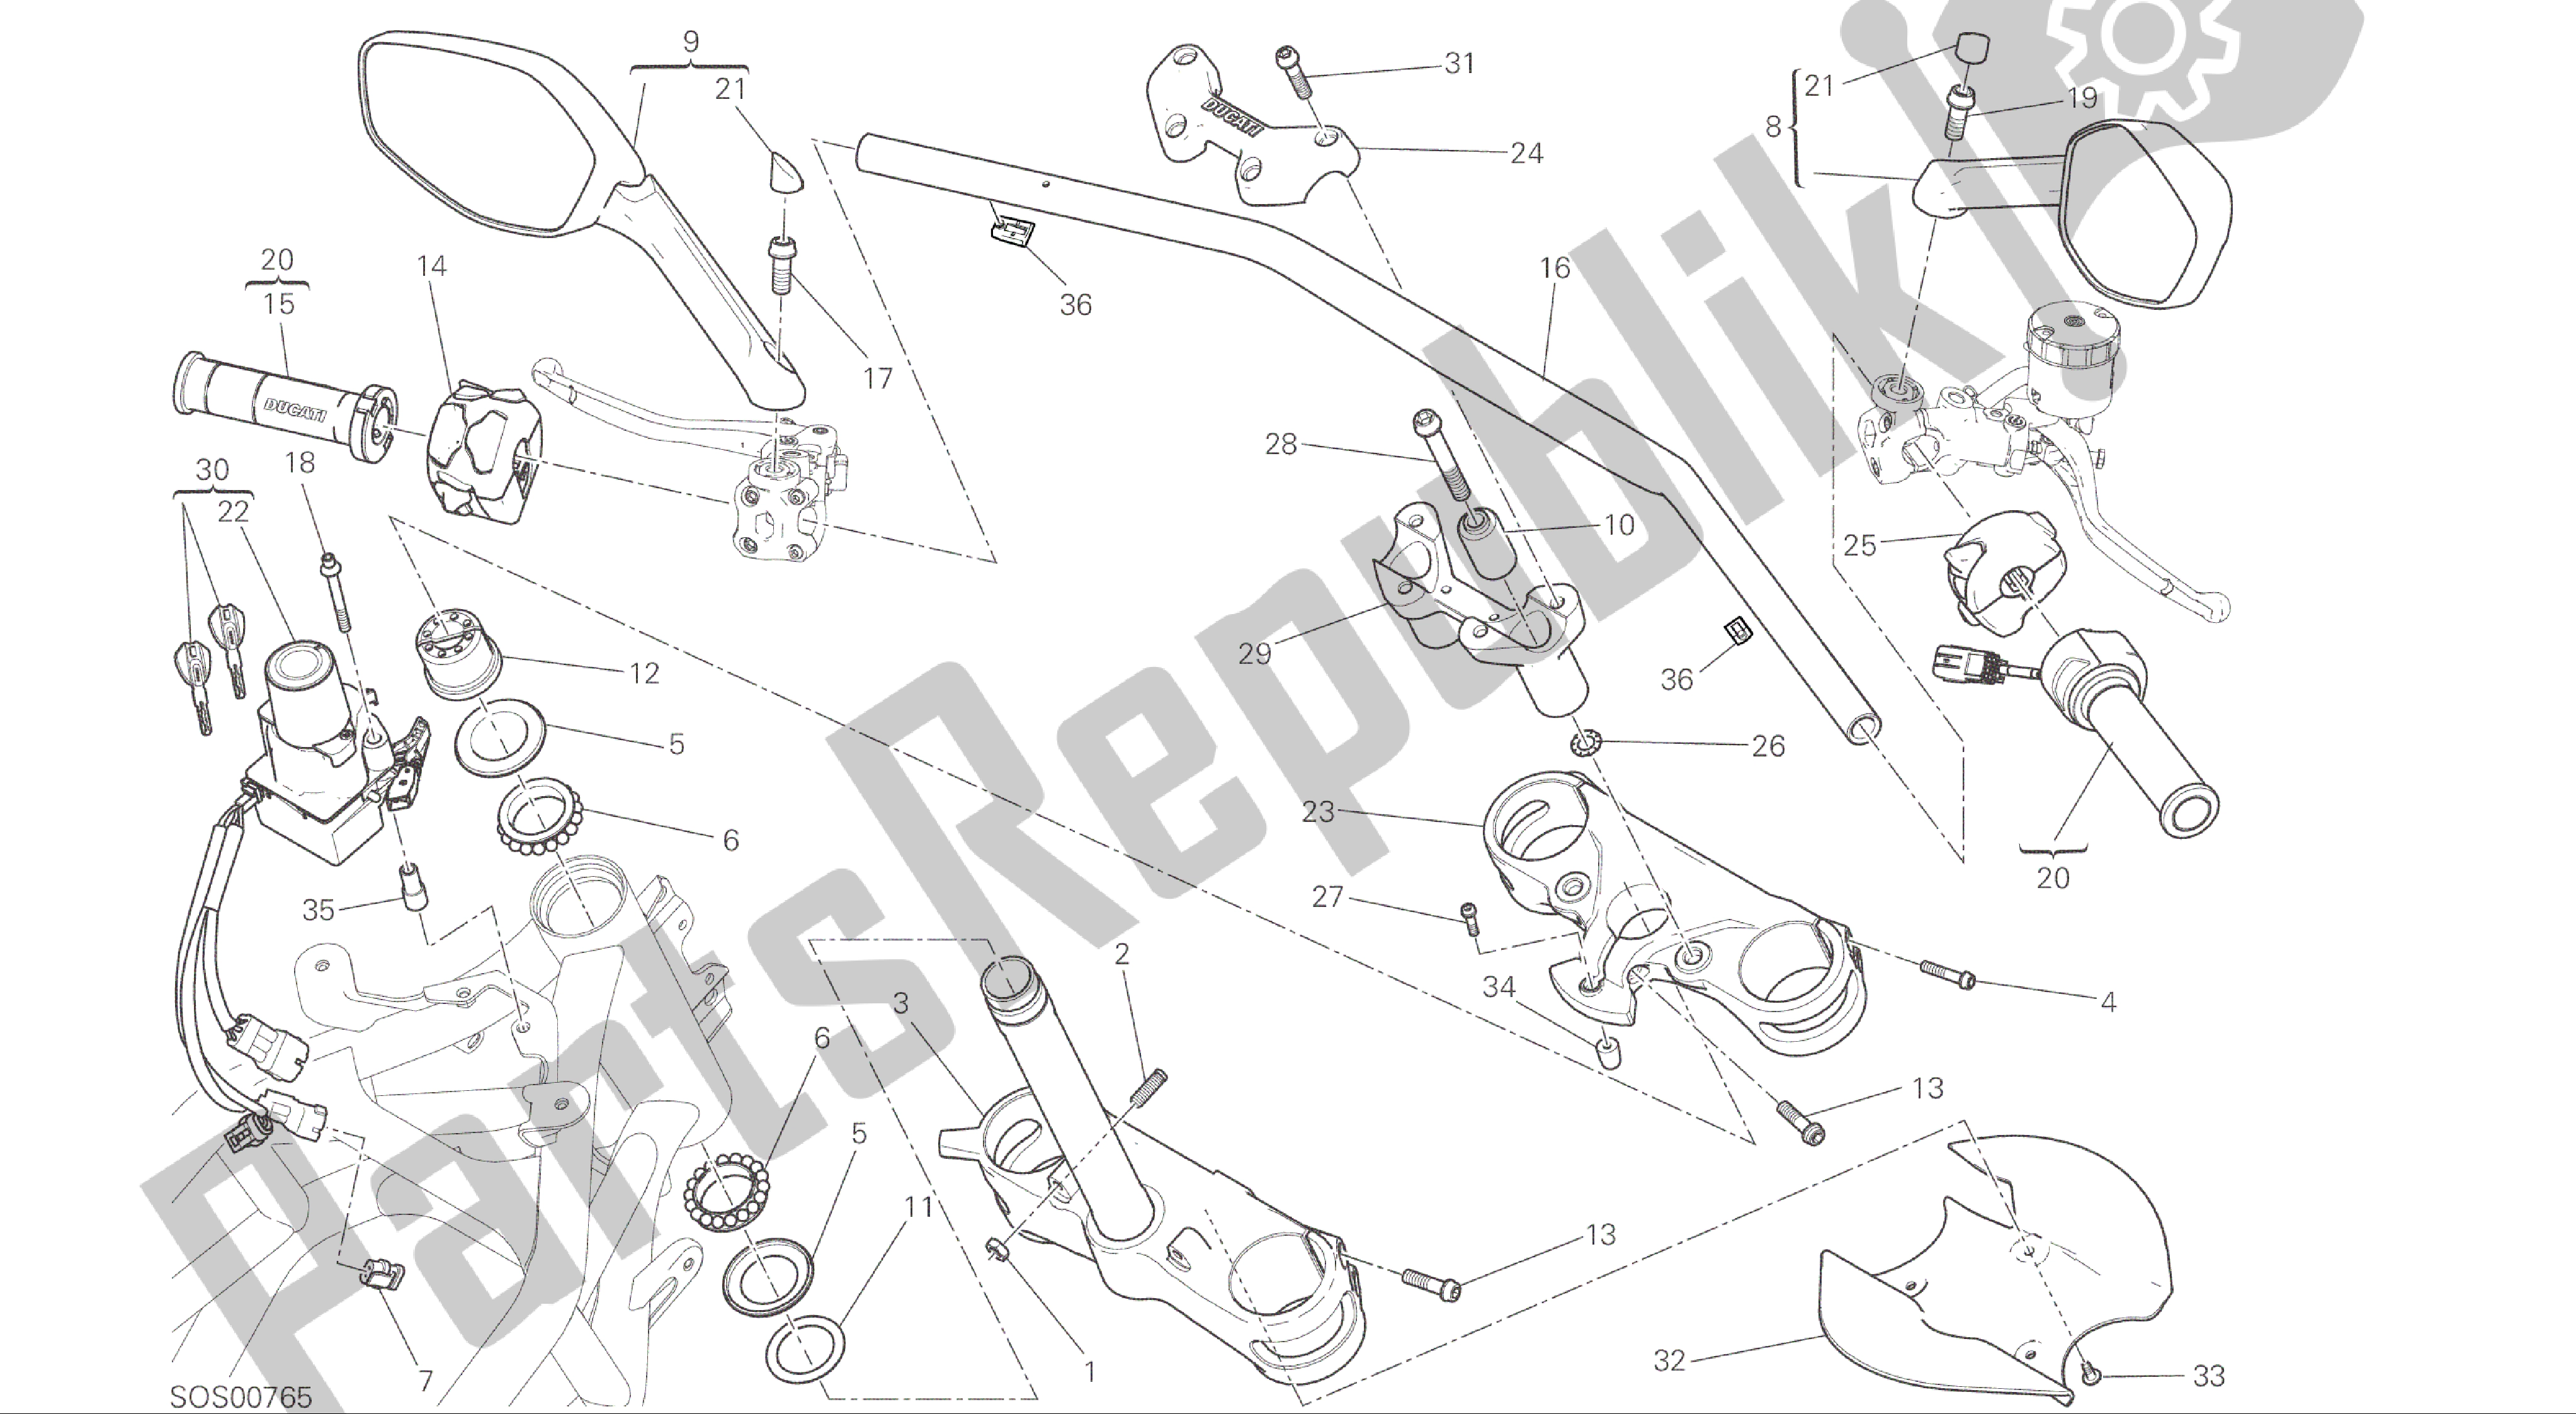 Toutes les pièces pour le Dessin 021 - Guidon [mod: Ms1200; Xst: Aus, Eur, Fra, Jap] Cadre De Groupe du Ducati Multistrada 1200 2015